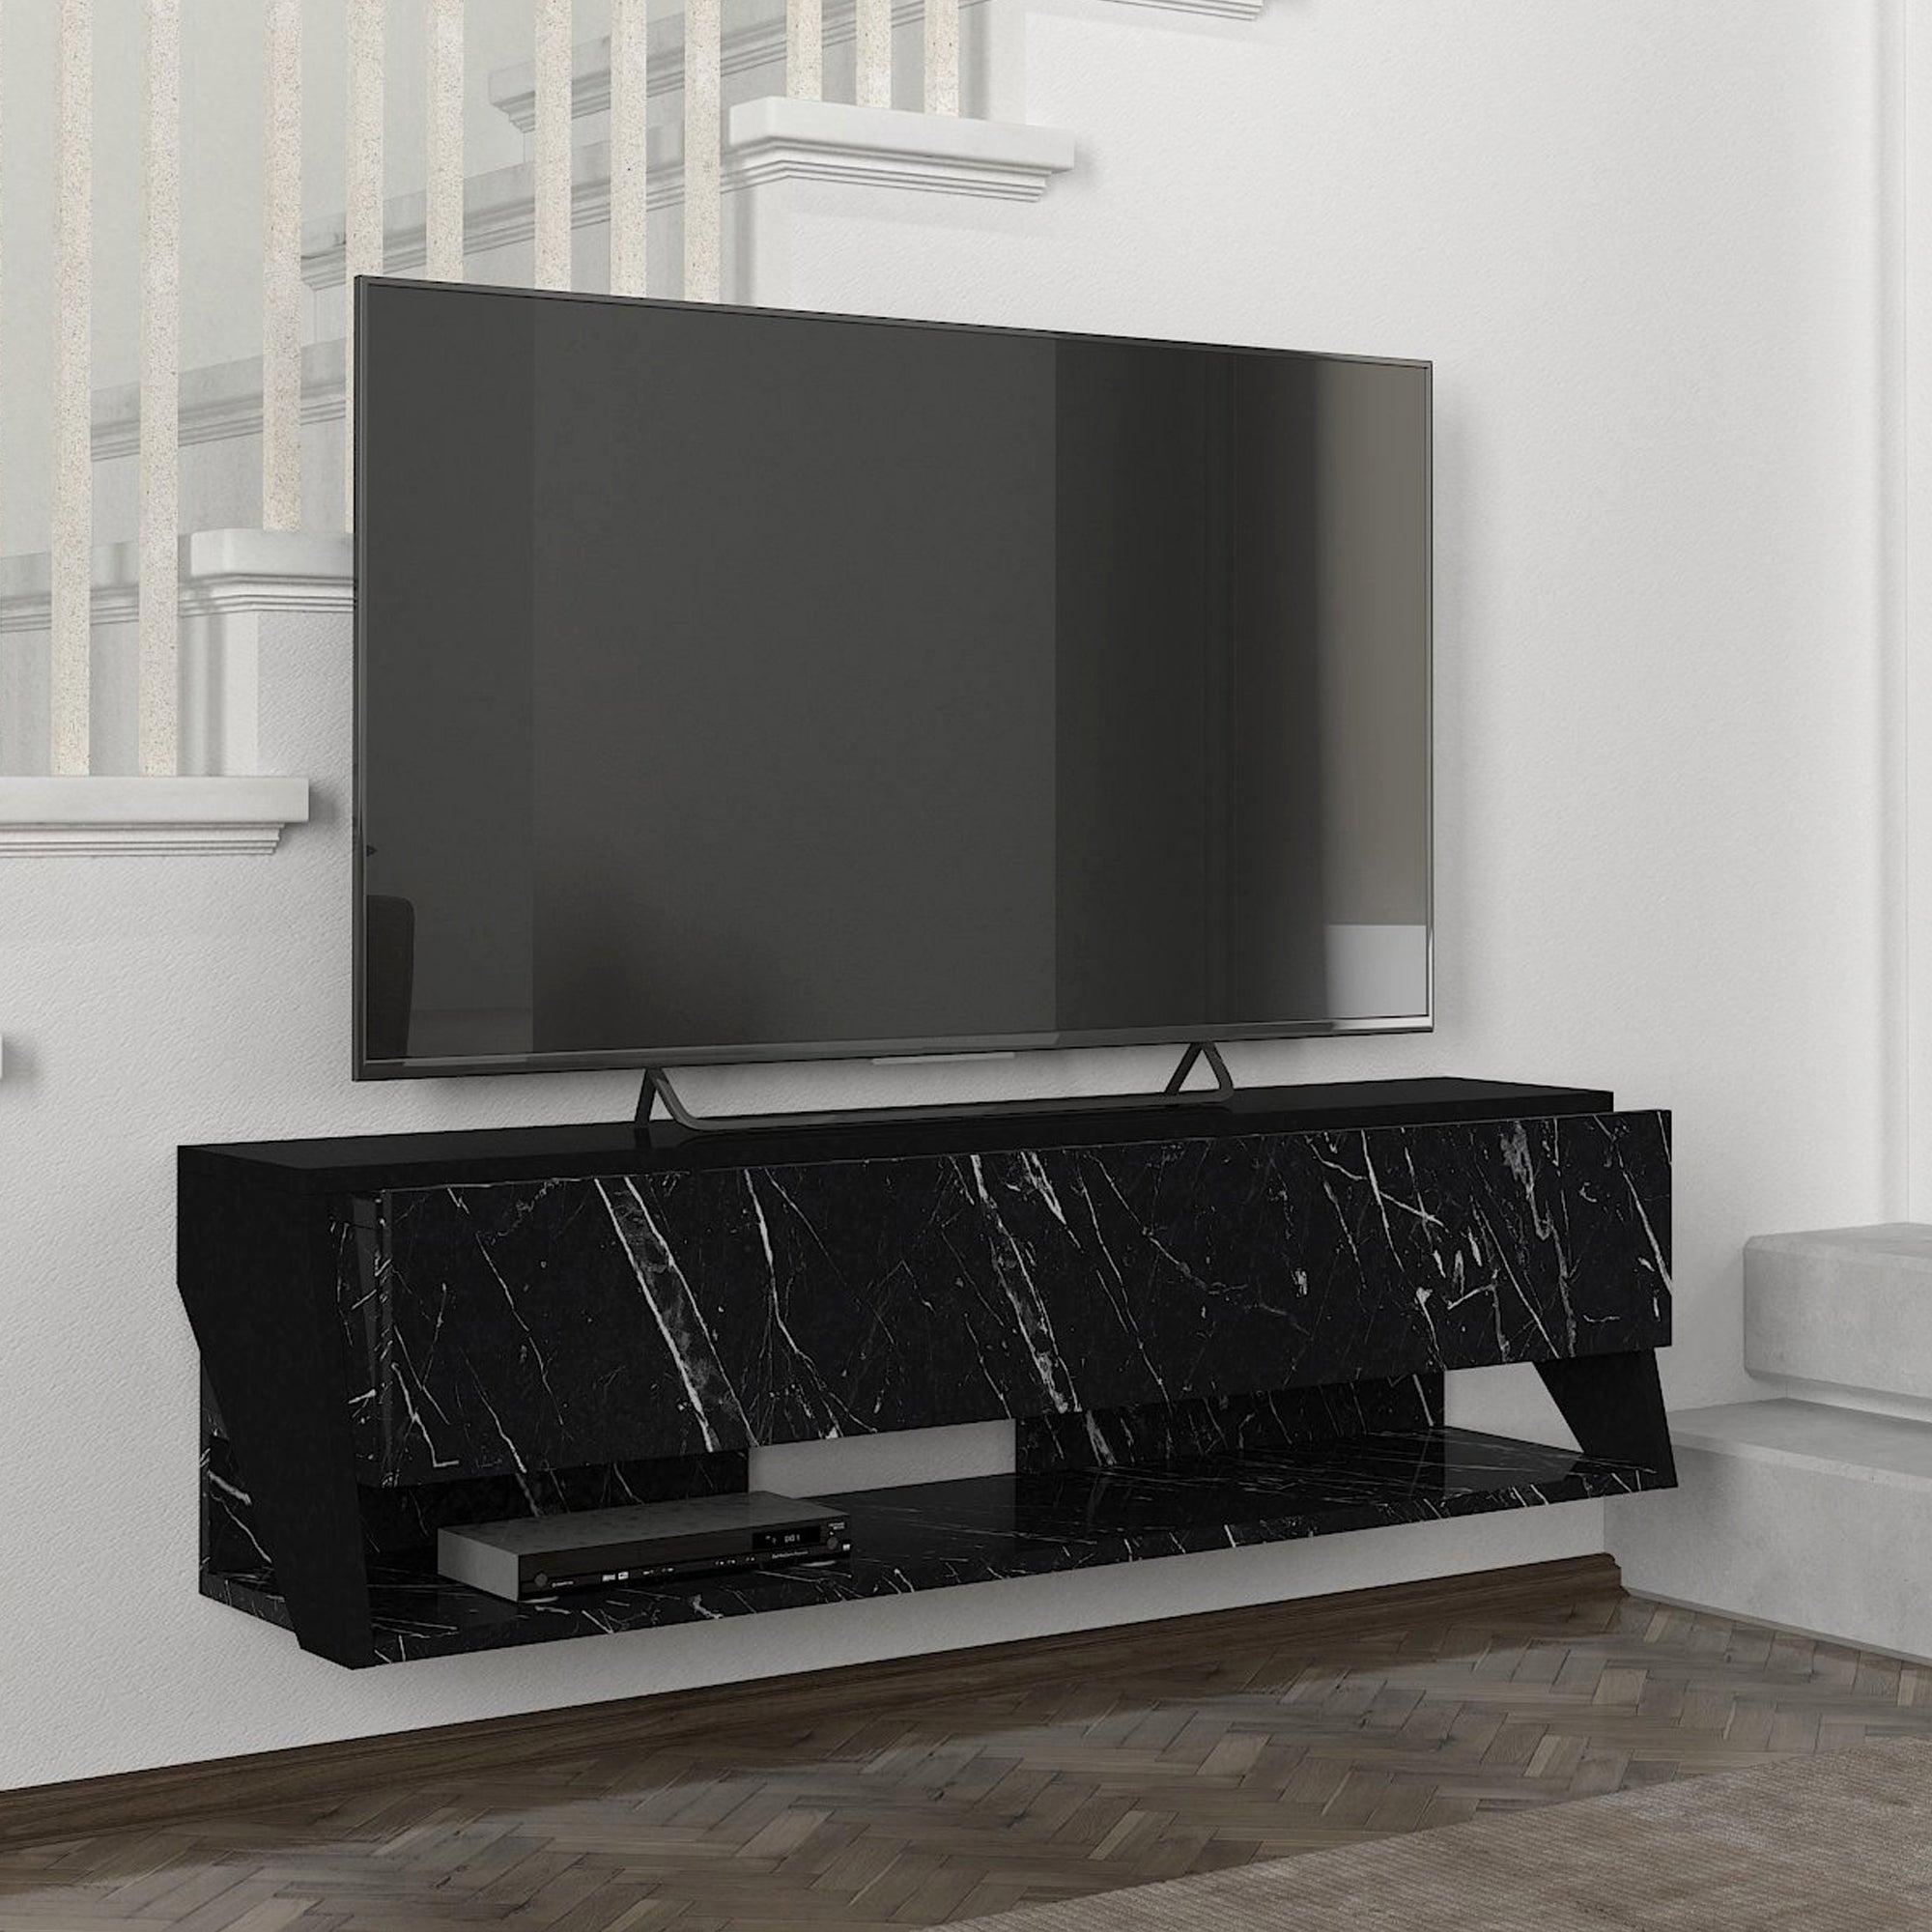 Mueble TV suspendido Kimitoön aglomerado con estante inferior 120 x 32 x 33  cm - Efecto roble / Antracita [en.casa]